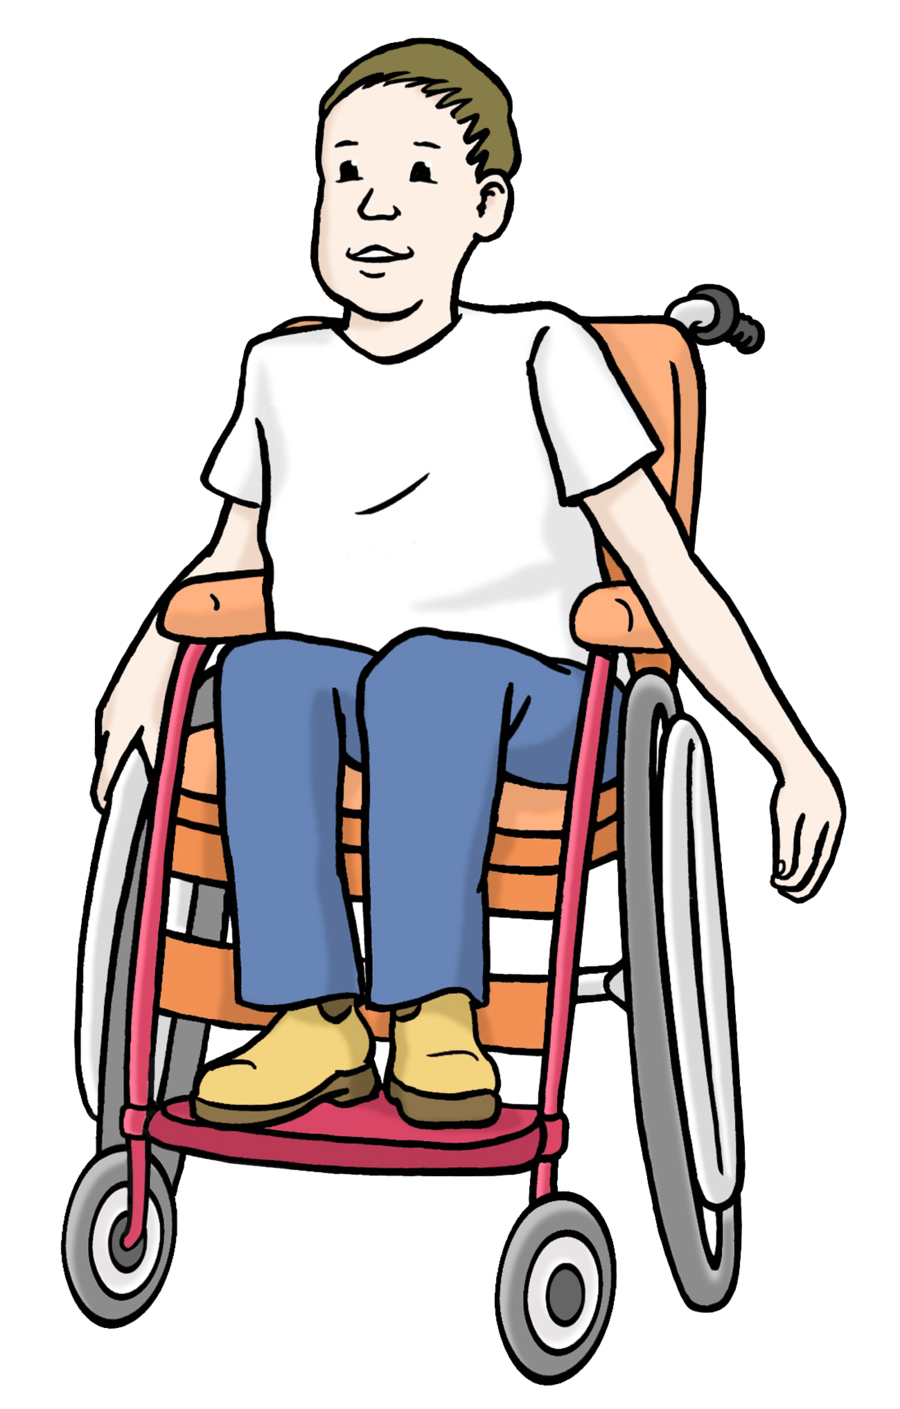 Farbige Zeichnung eines Jungen in einem Rollstuhl.